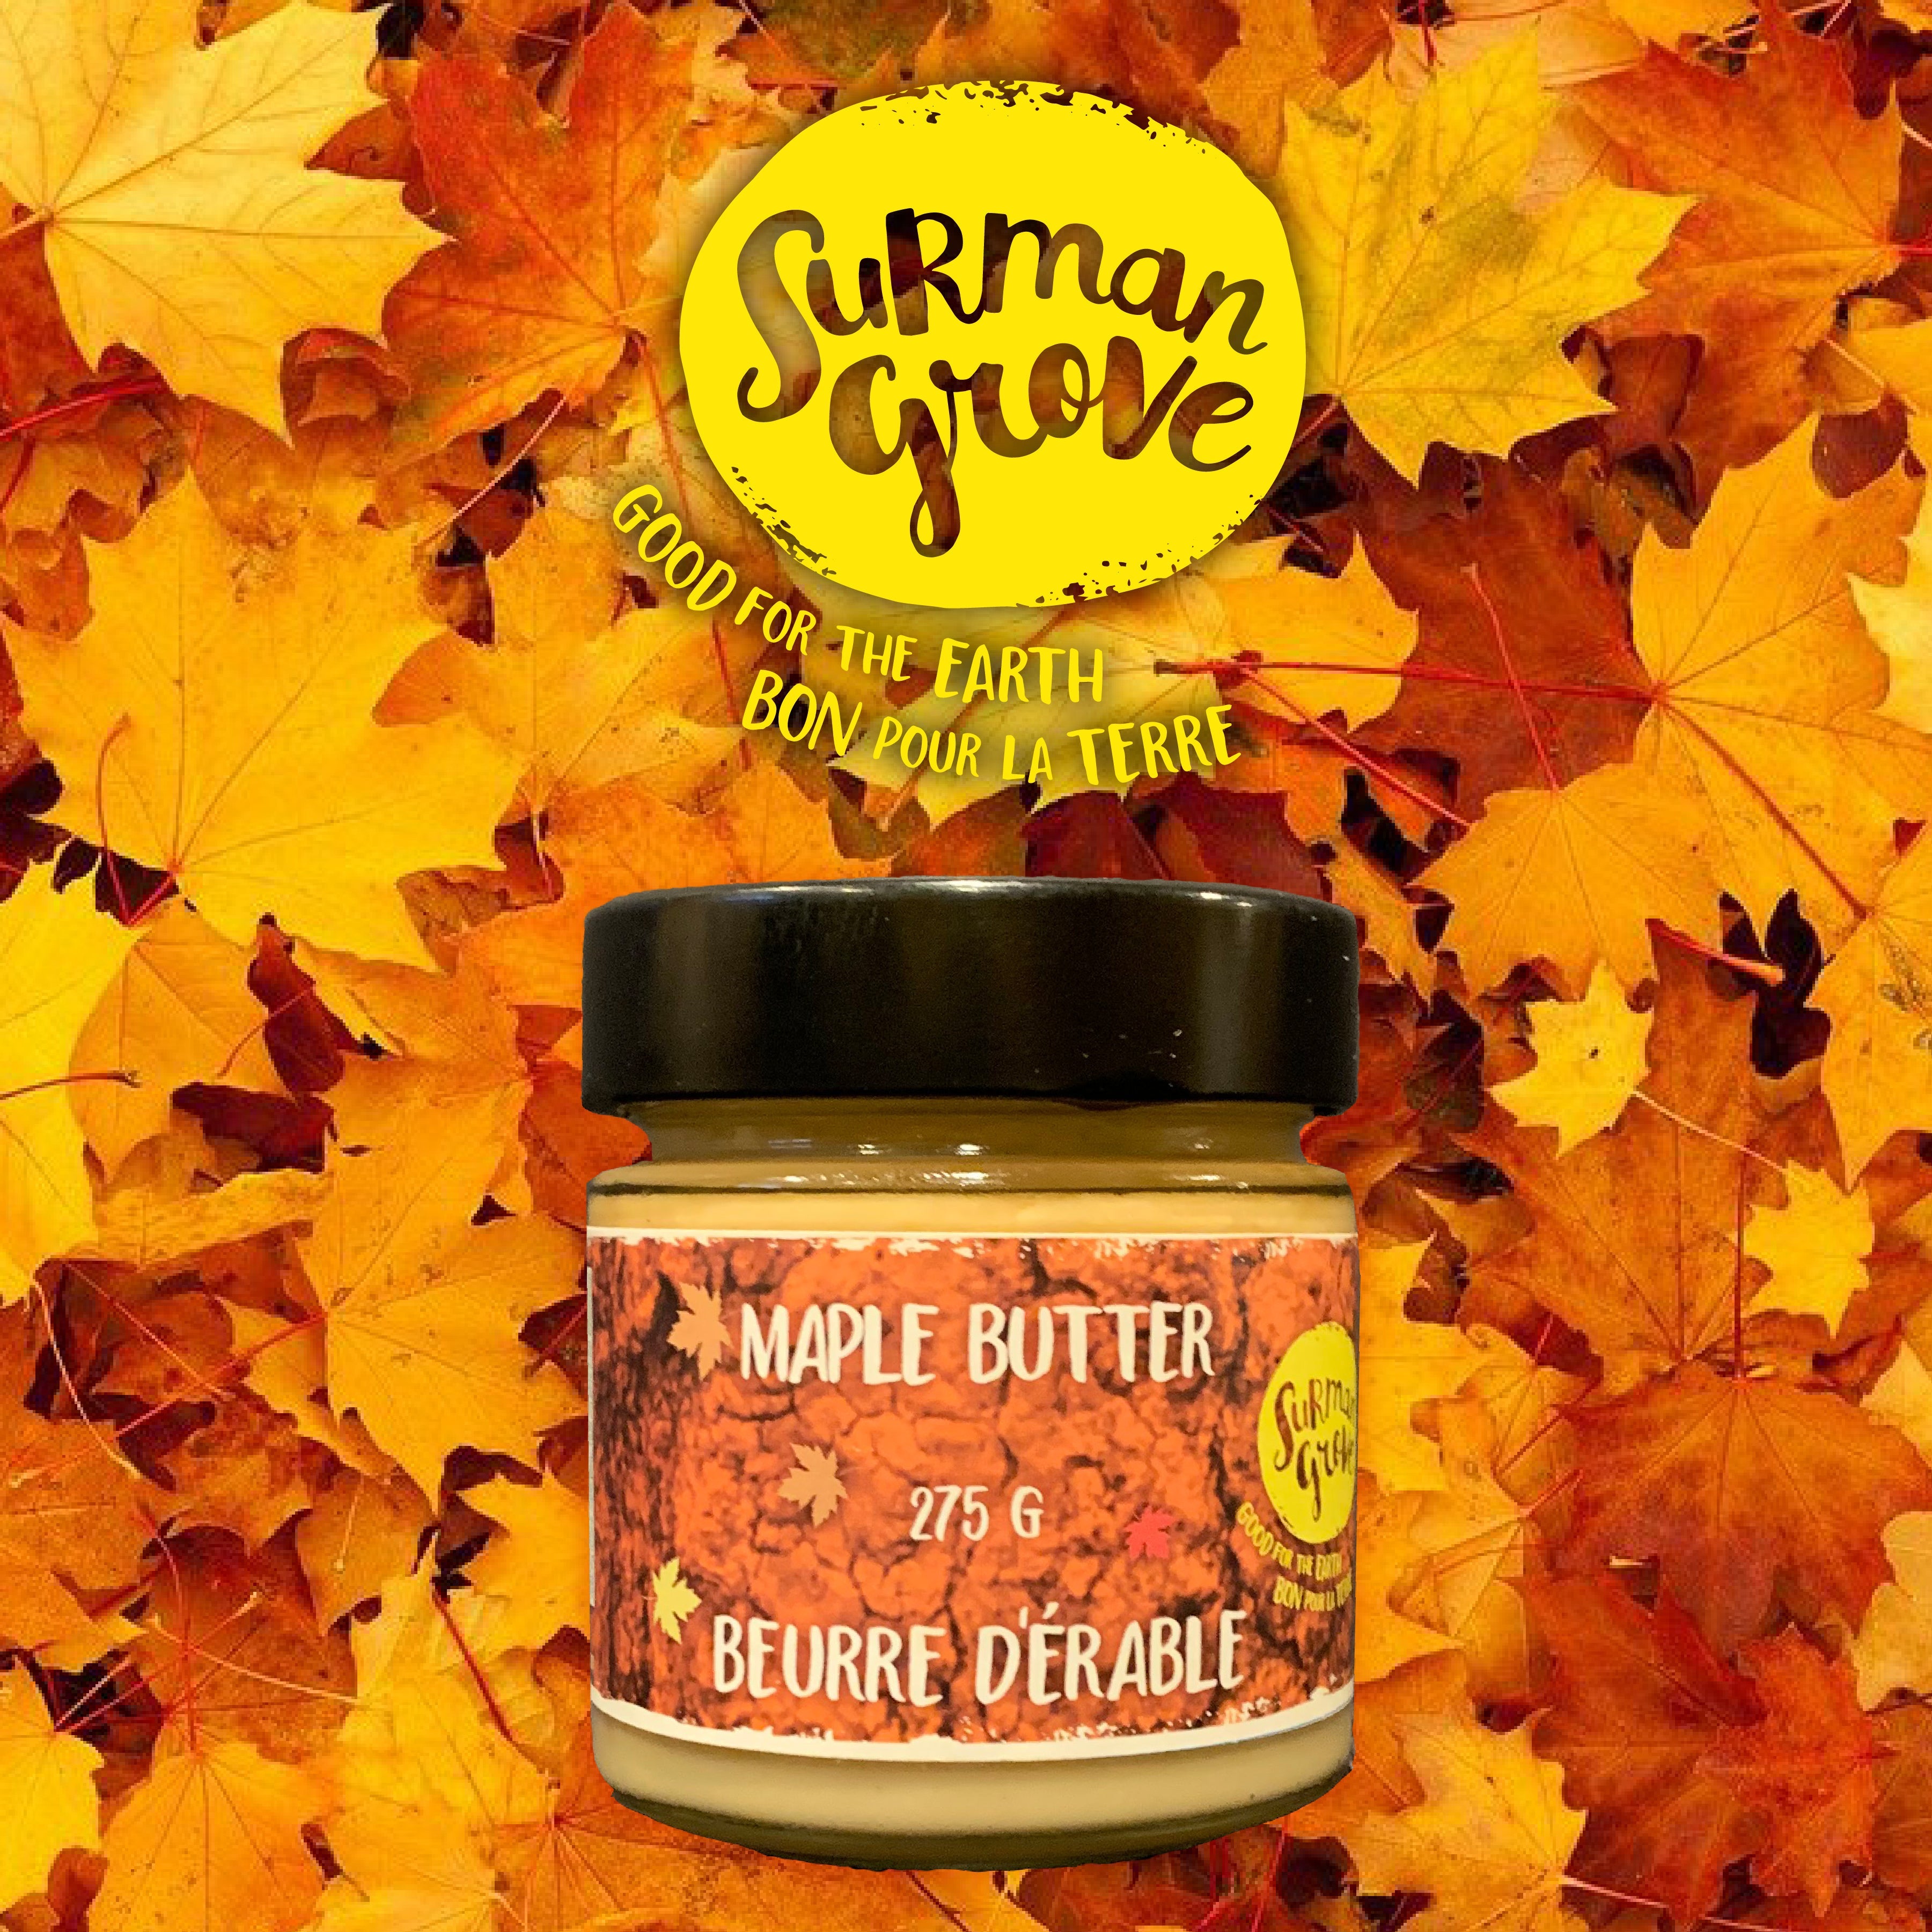 Surman Grove Maple Butter